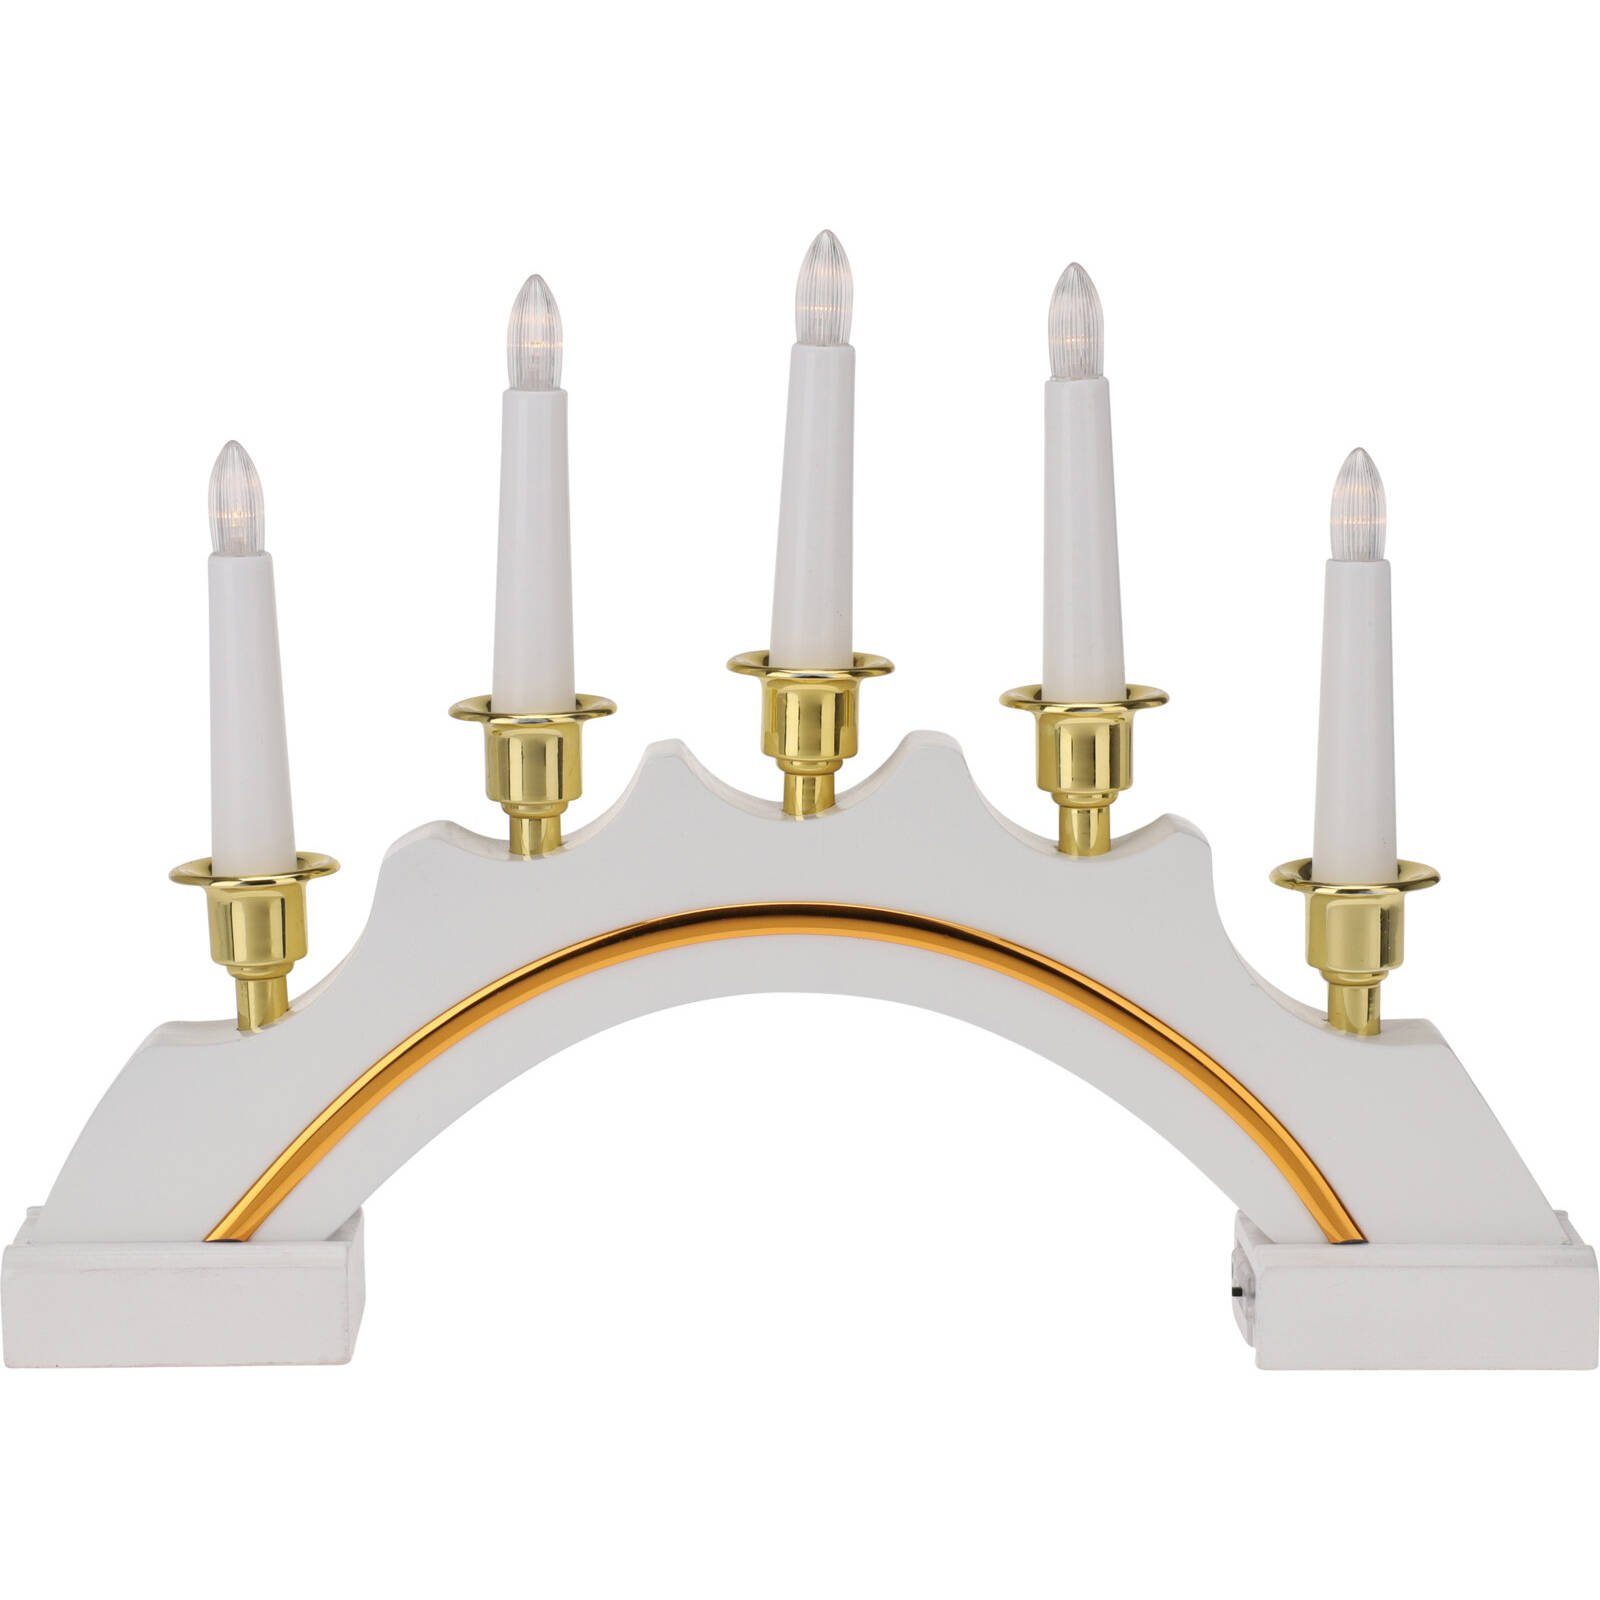 Kerzenleuchter 5 styling LED-Kerzen & collection Kerzenleuchter, Home